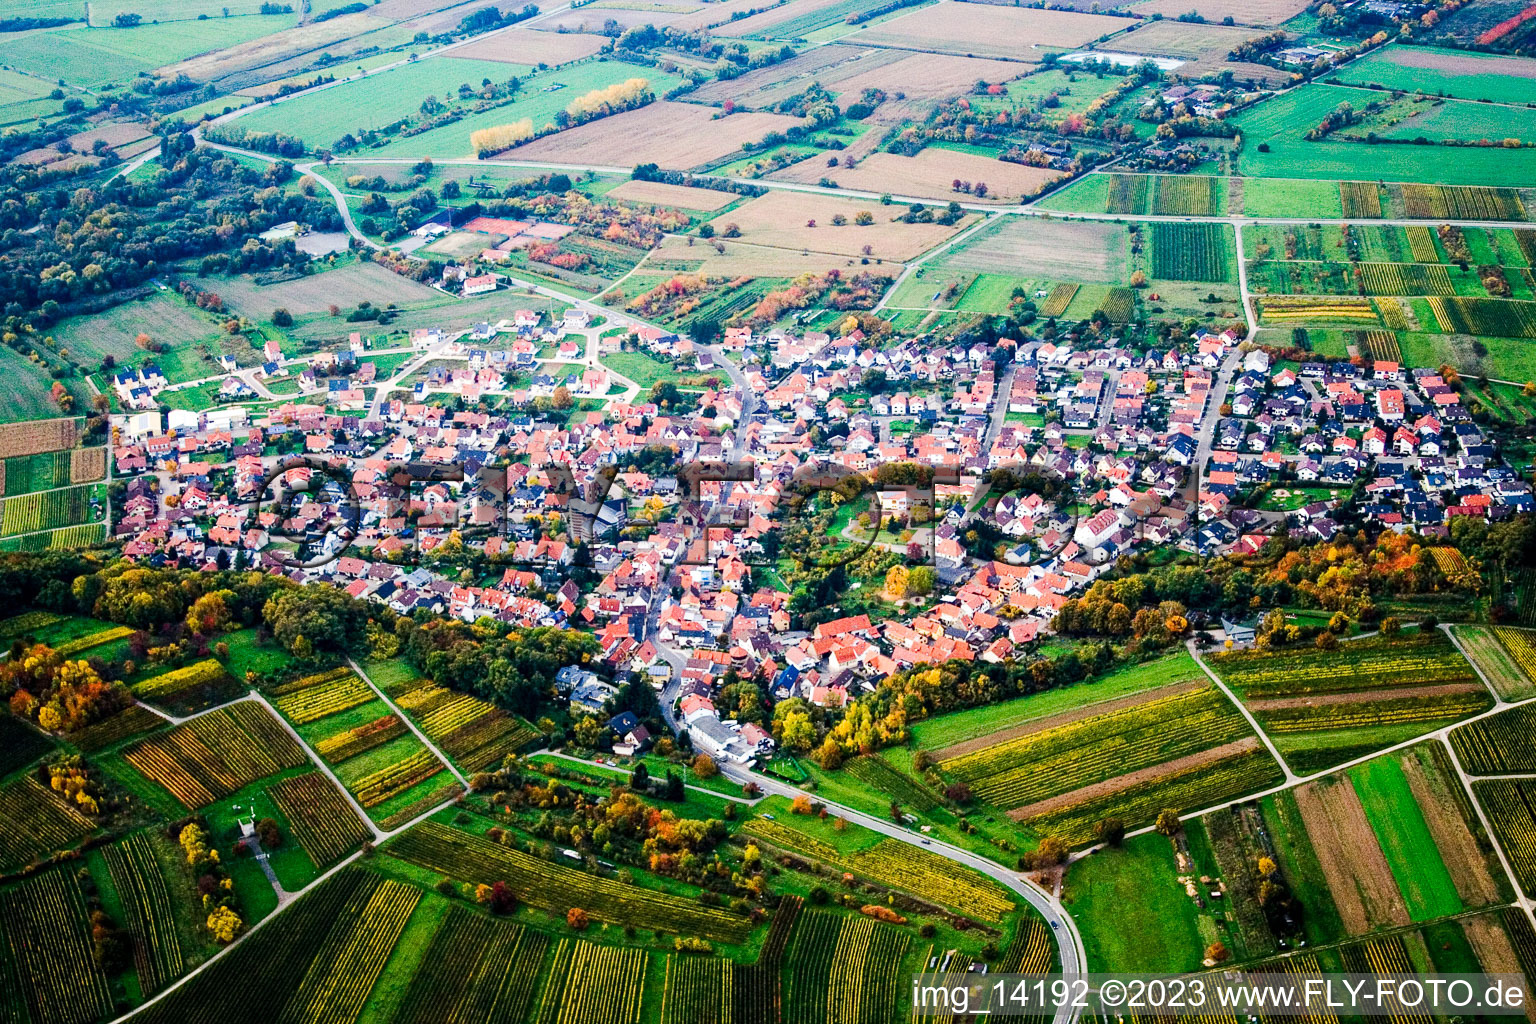 Vue aérienne de Rettigheim dans le département Bade-Wurtemberg, Allemagne